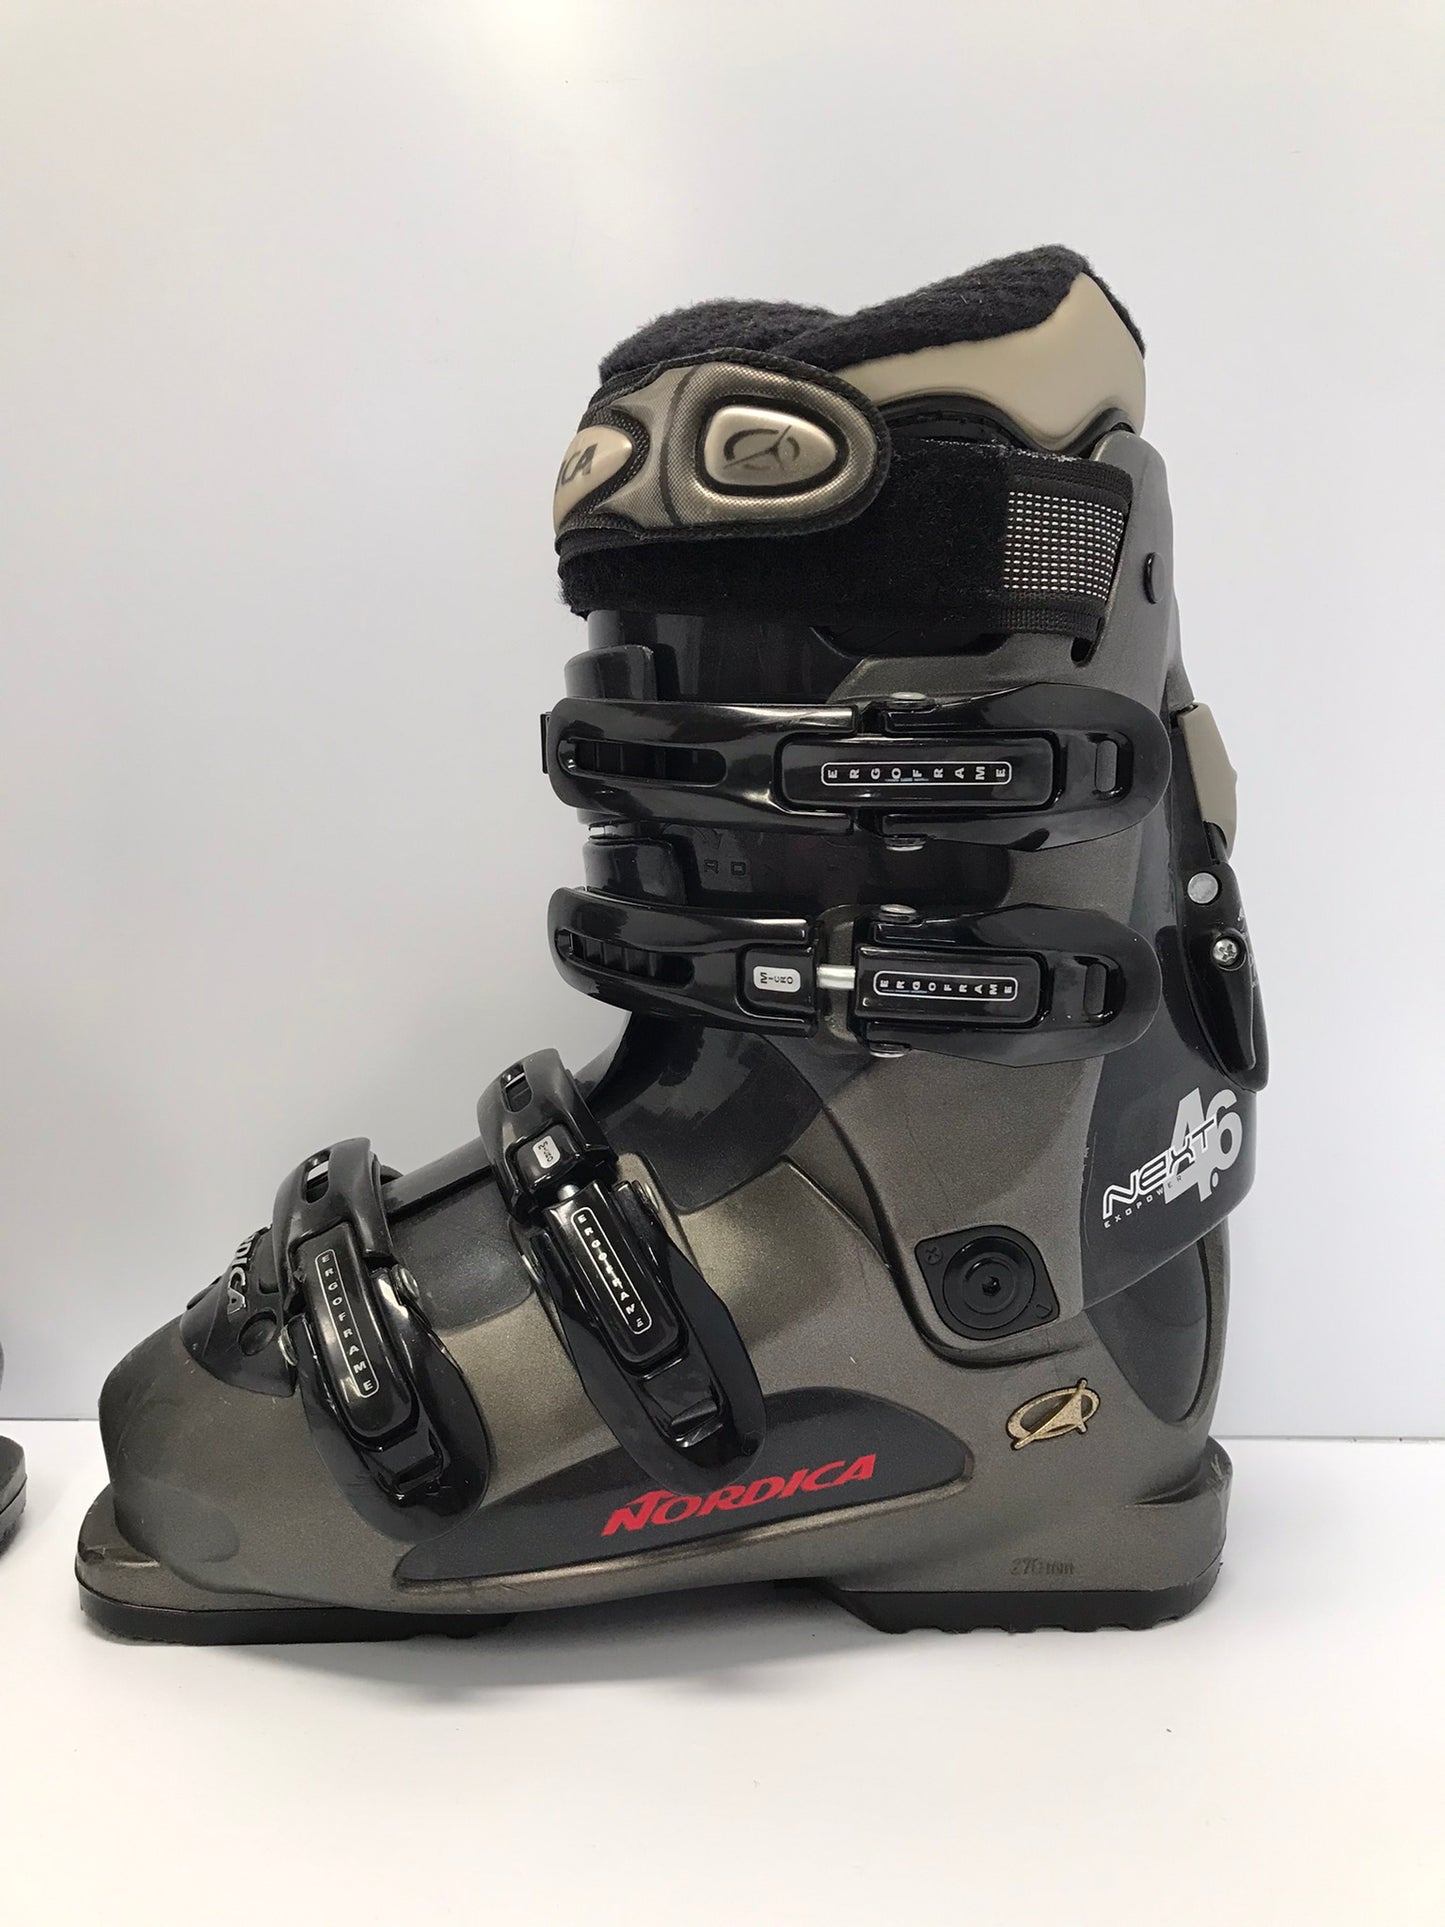 Ski Boots Mondo Size 23.0 Men's Size 5 Ladies Size 6 270 mm Nordica Grey Black Excellent